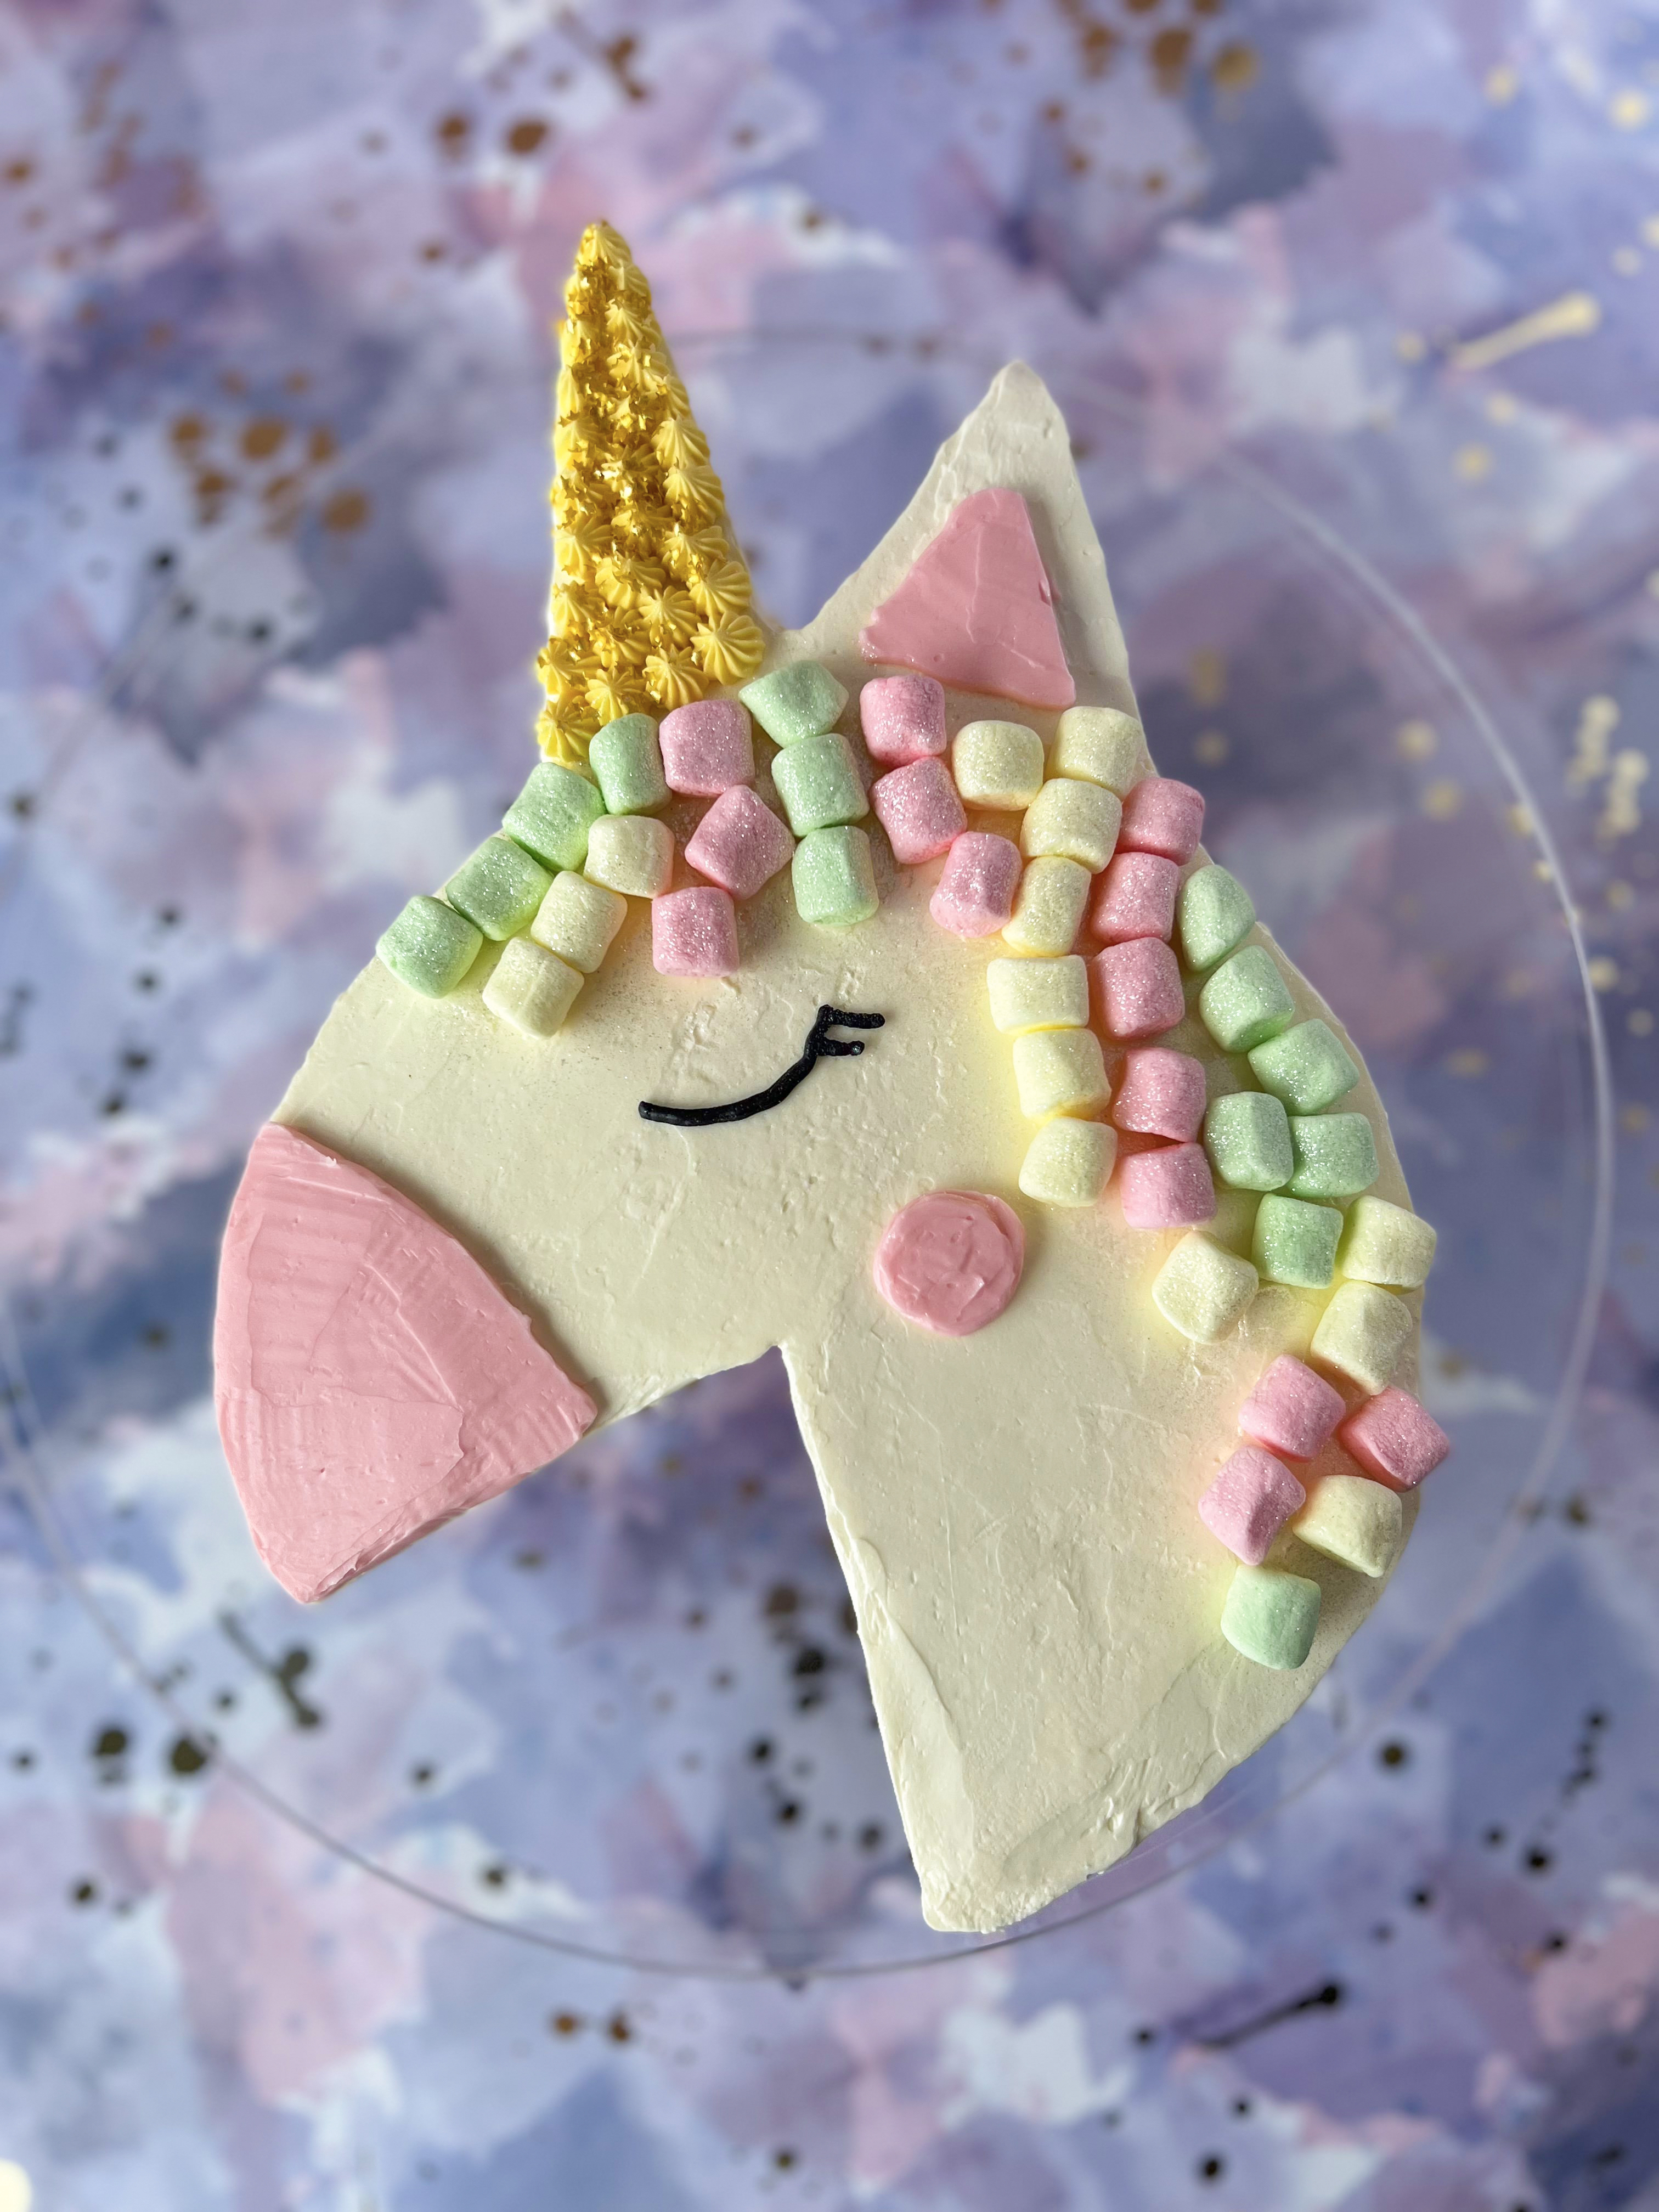 Unicorn Cake – HOW TO CAKE IT